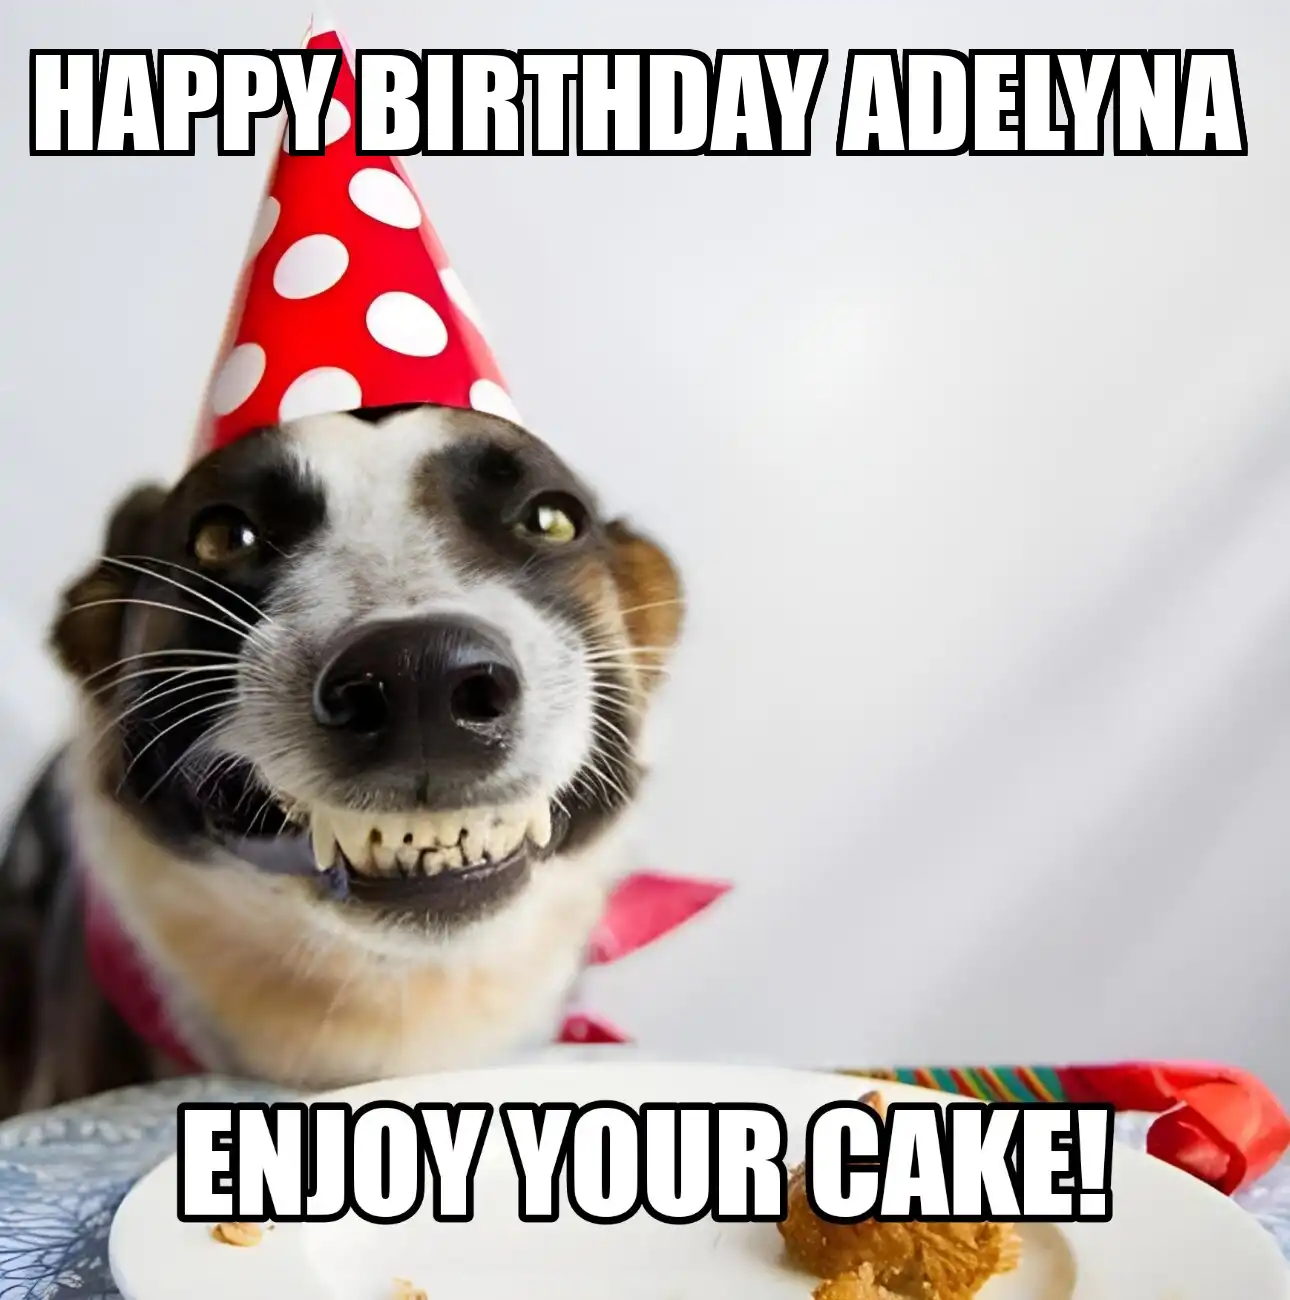 Happy Birthday Adelyna Enjoy Your Cake Dog Meme